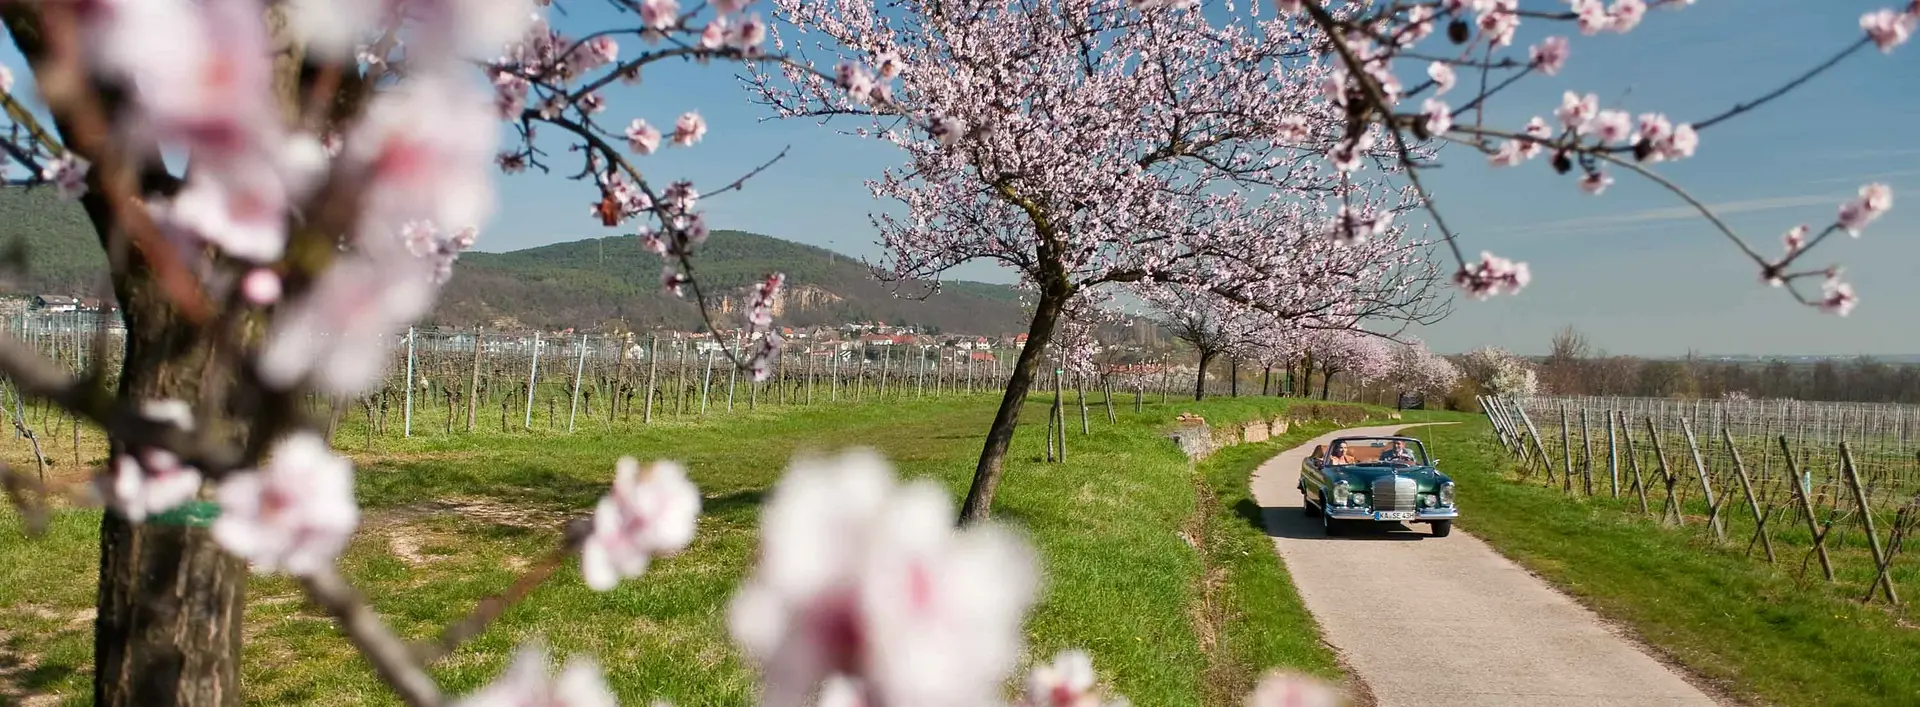 In der Pfalz blühen im Frühjahr die Mandelbäume. Sie tauchen die Weinberge entlang der Deutschen Weinstraße alljährlich in ein rosafarbenes Blütenmeer.